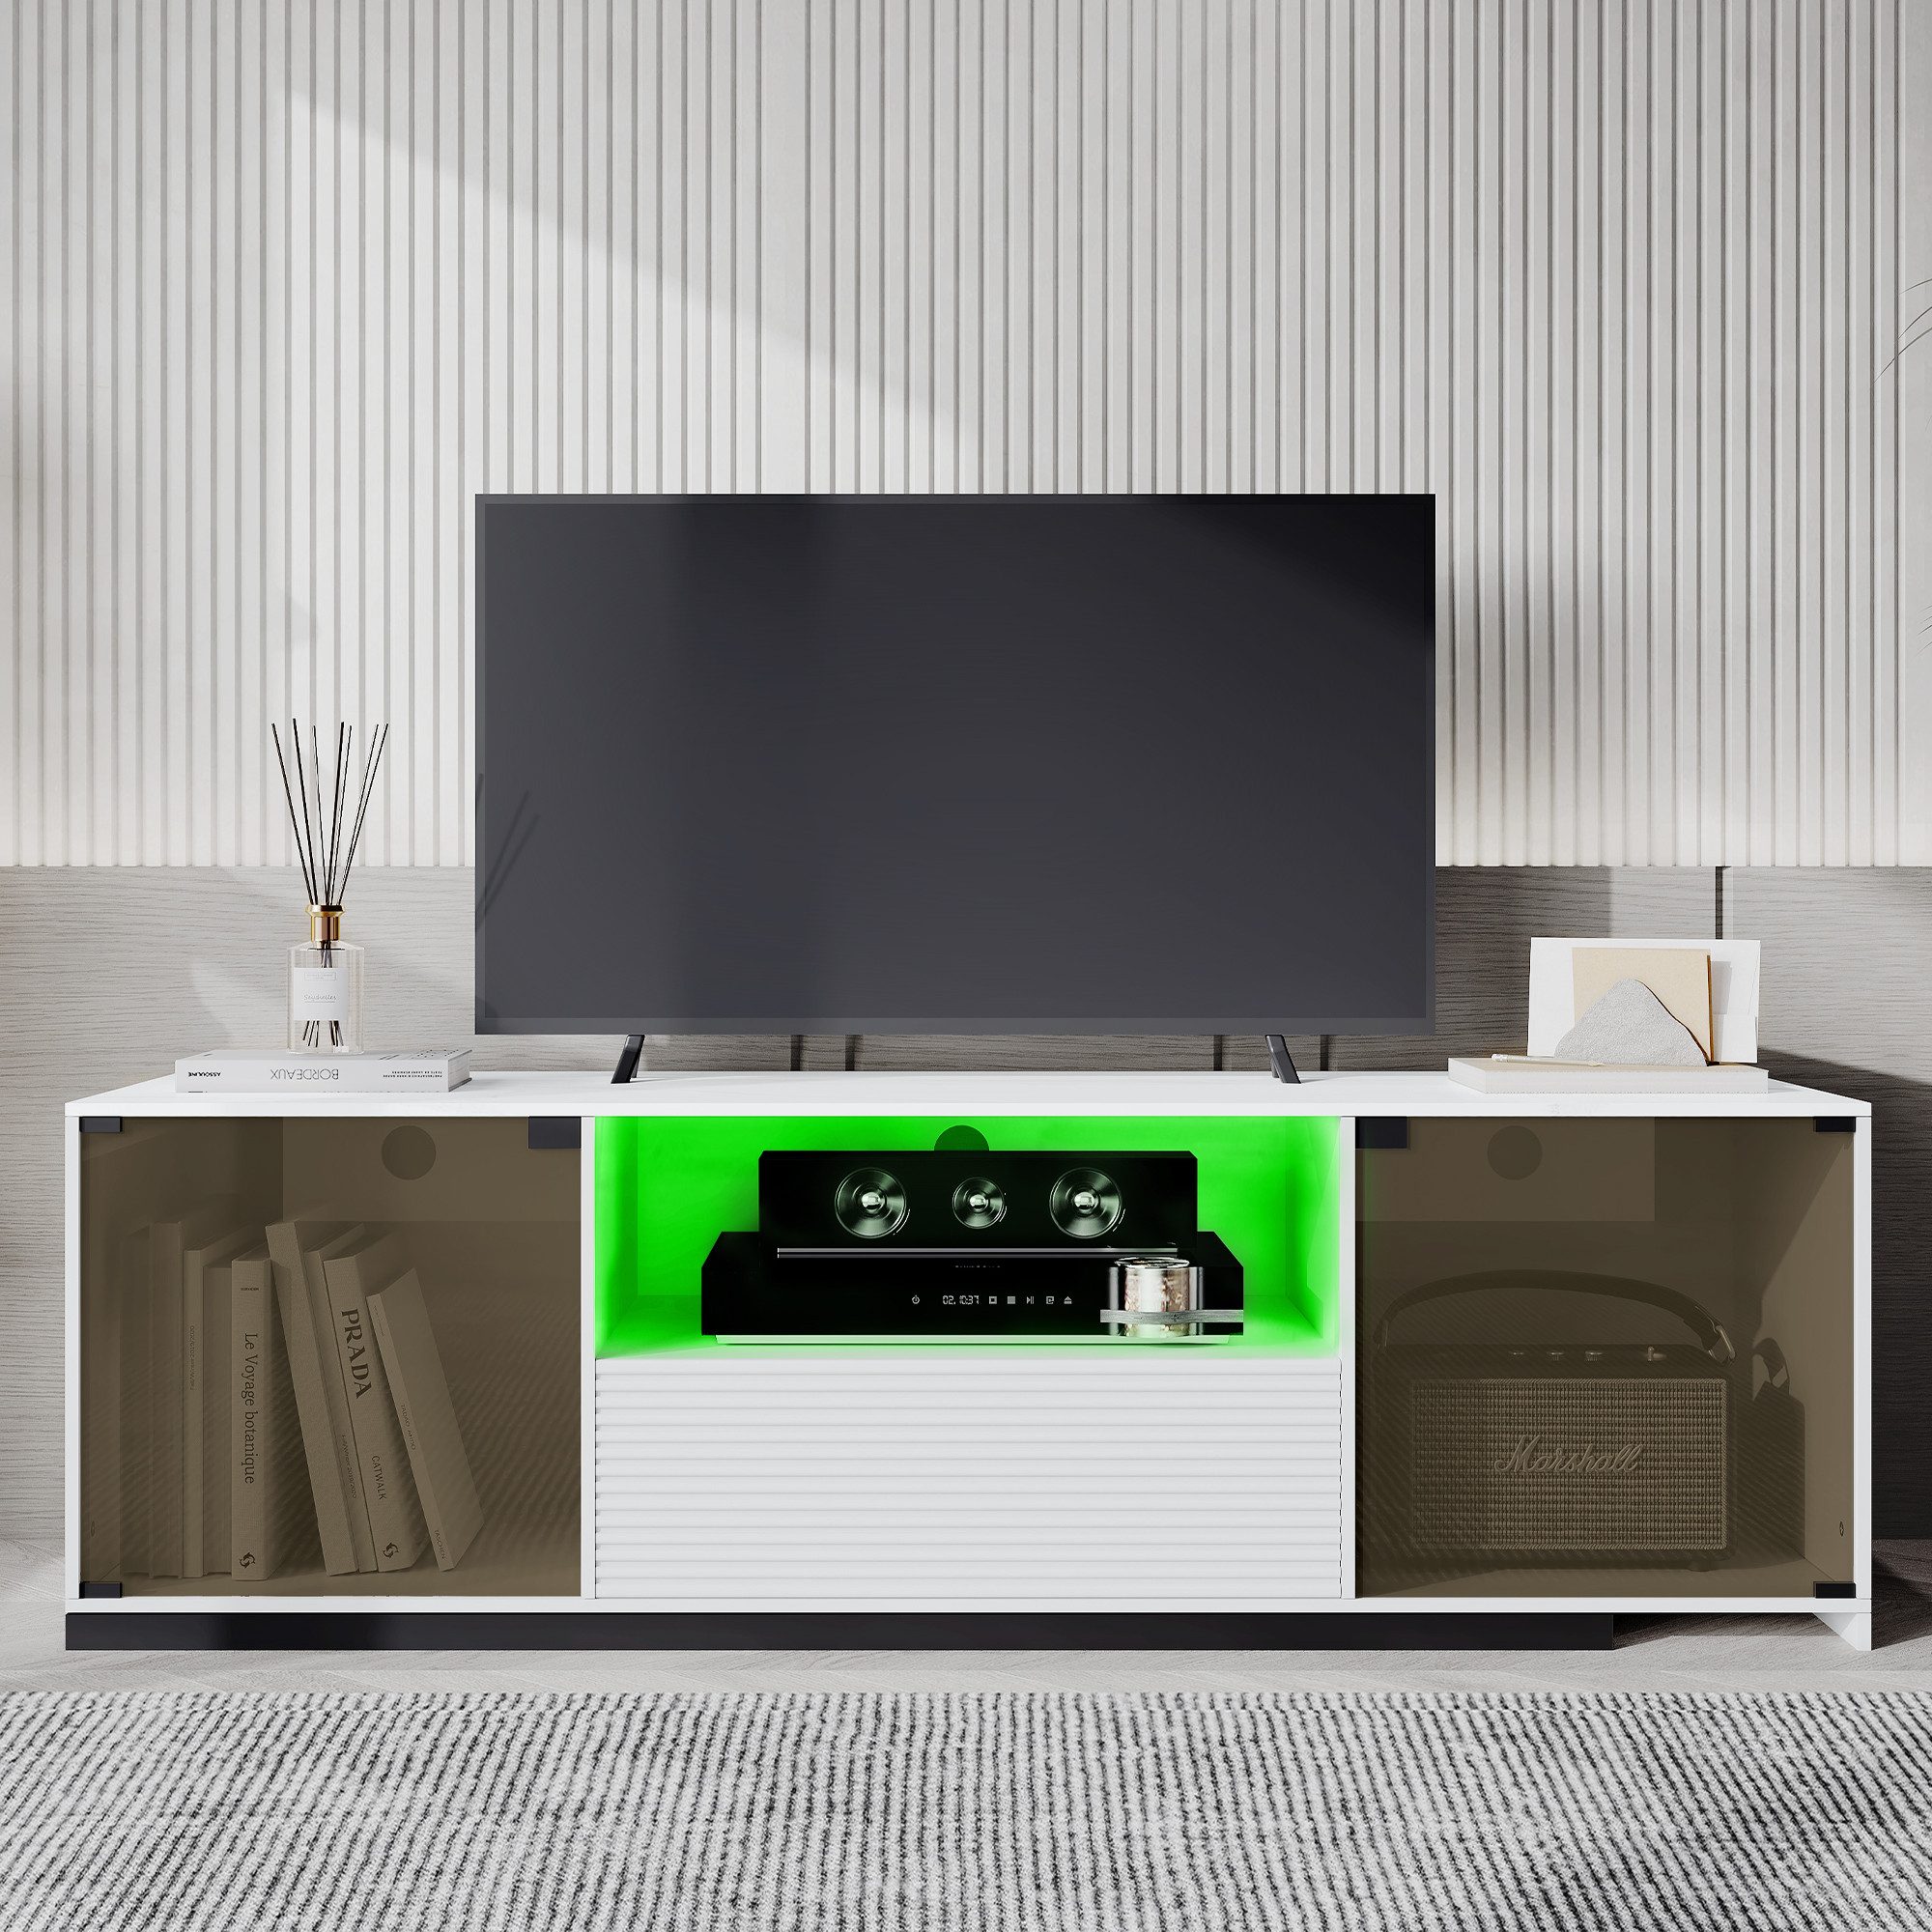 XDOVET TV-Schrank Lowboard mit 15 Farben LED-Beleuchtung und Schiebedesign 140cm Marmorgeäderter Tischplatte Glasdesign 2 Türen, 1 Schublade